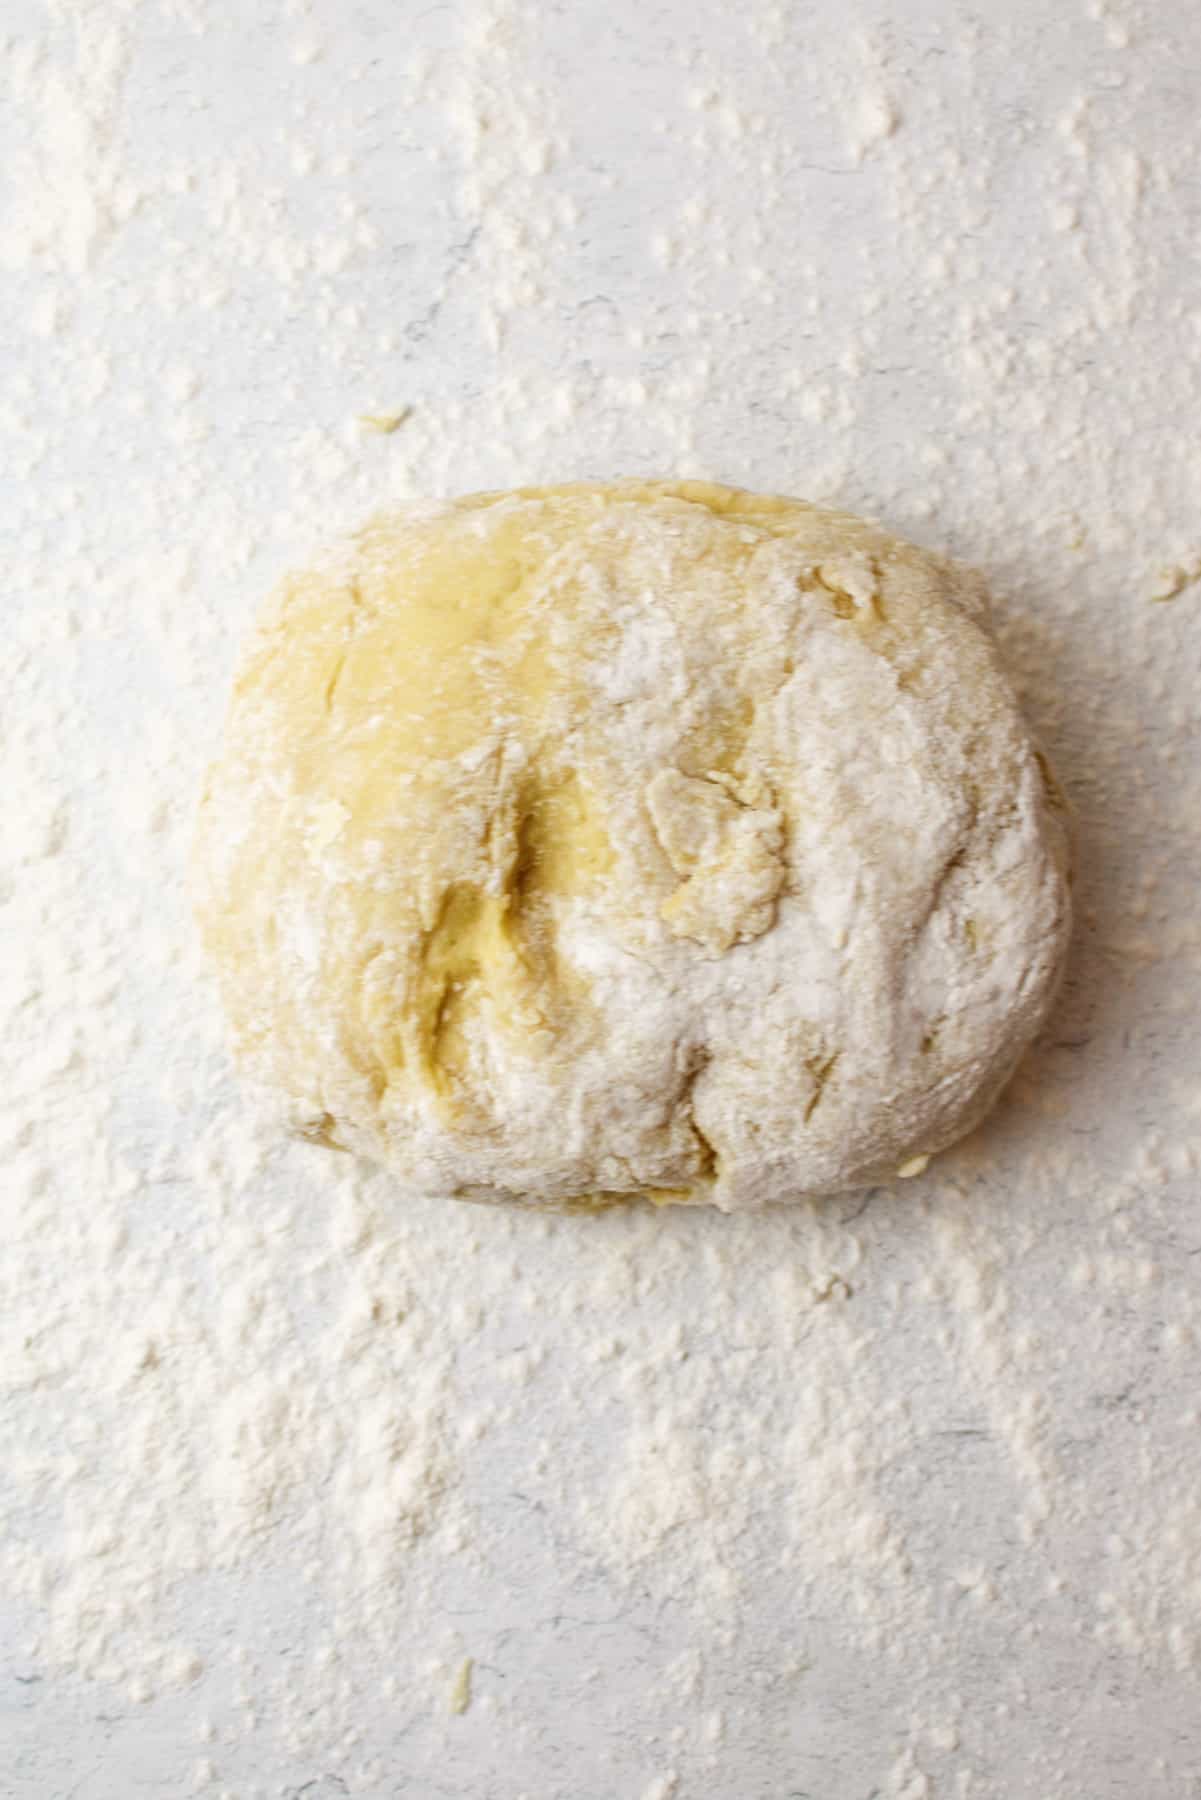 a pile of dough on a floured surface.